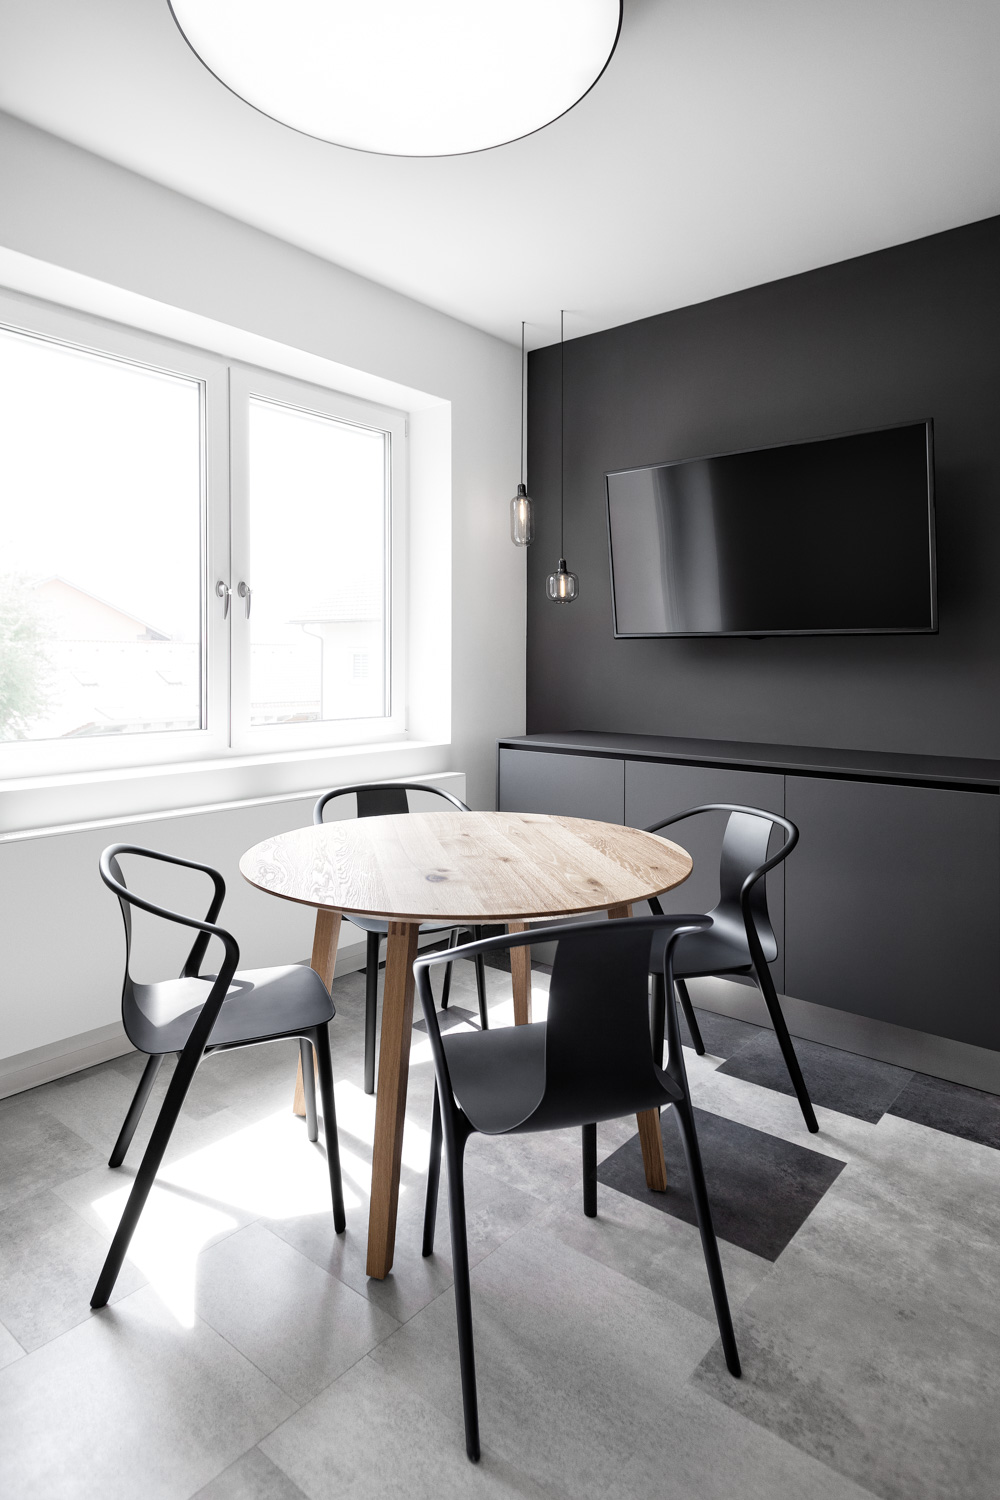 Um einen runden Holztisch stehen vier schwarze Holzstühle. Wand auf der rechten Seite ist antharzit gestrichen, davor steht ein Siteboard in der gleichen Farbe. Ein schwarzer Flachbildschirm hängt an der Wand, davor zwei Hängeleuchten. Links das große Fenster.